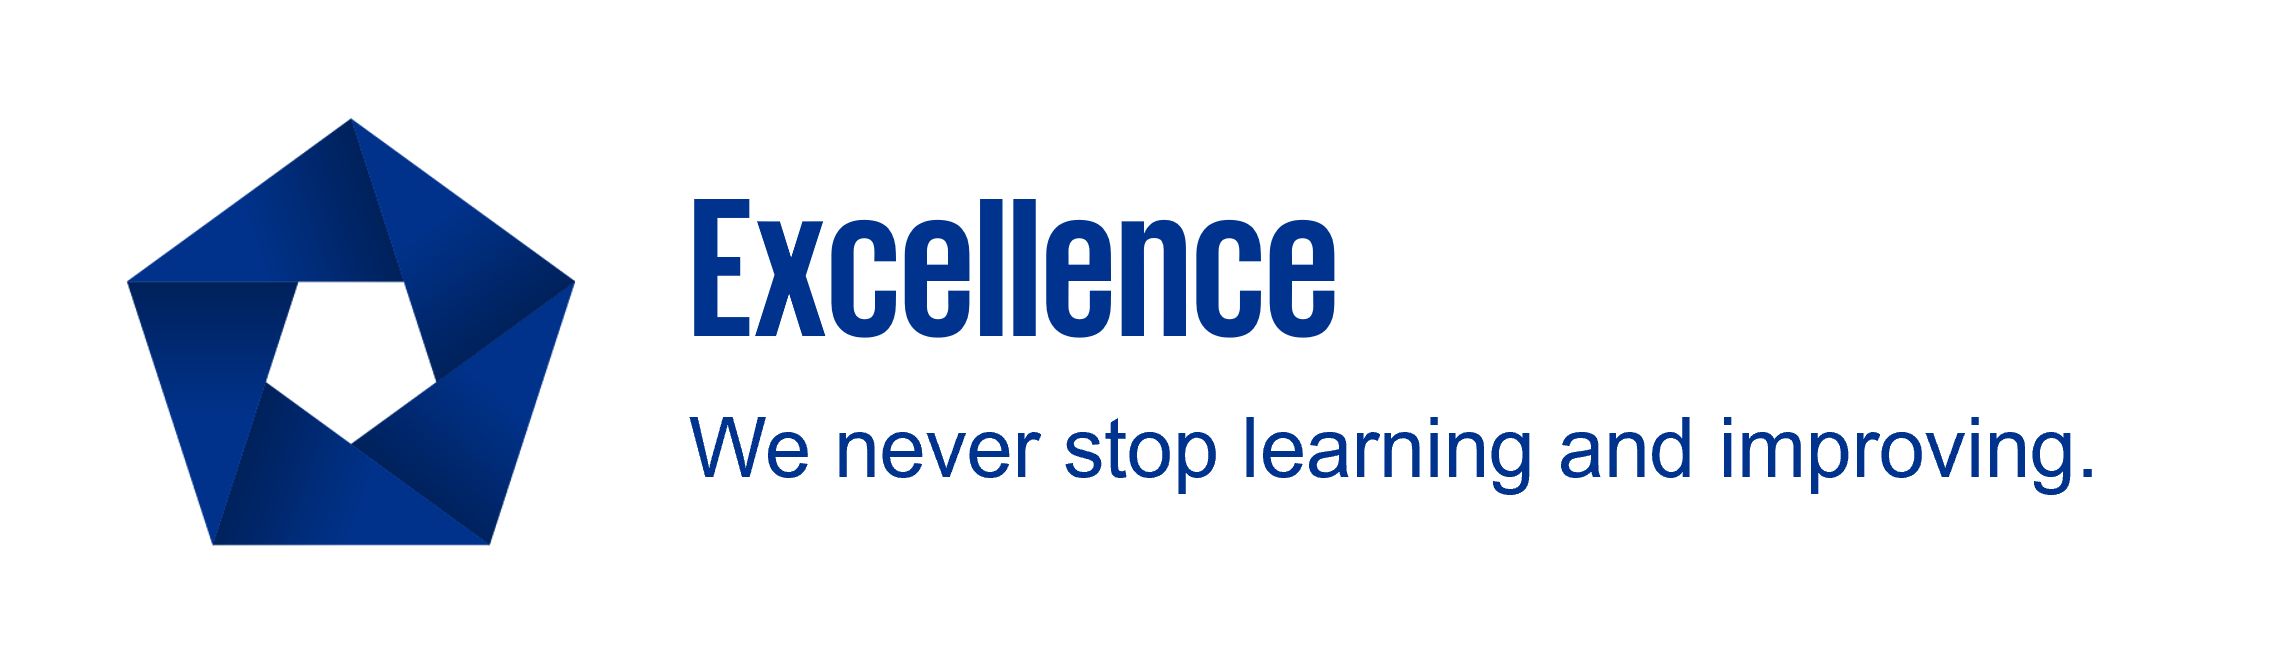 Excellence: 我們從不停止學習與進步